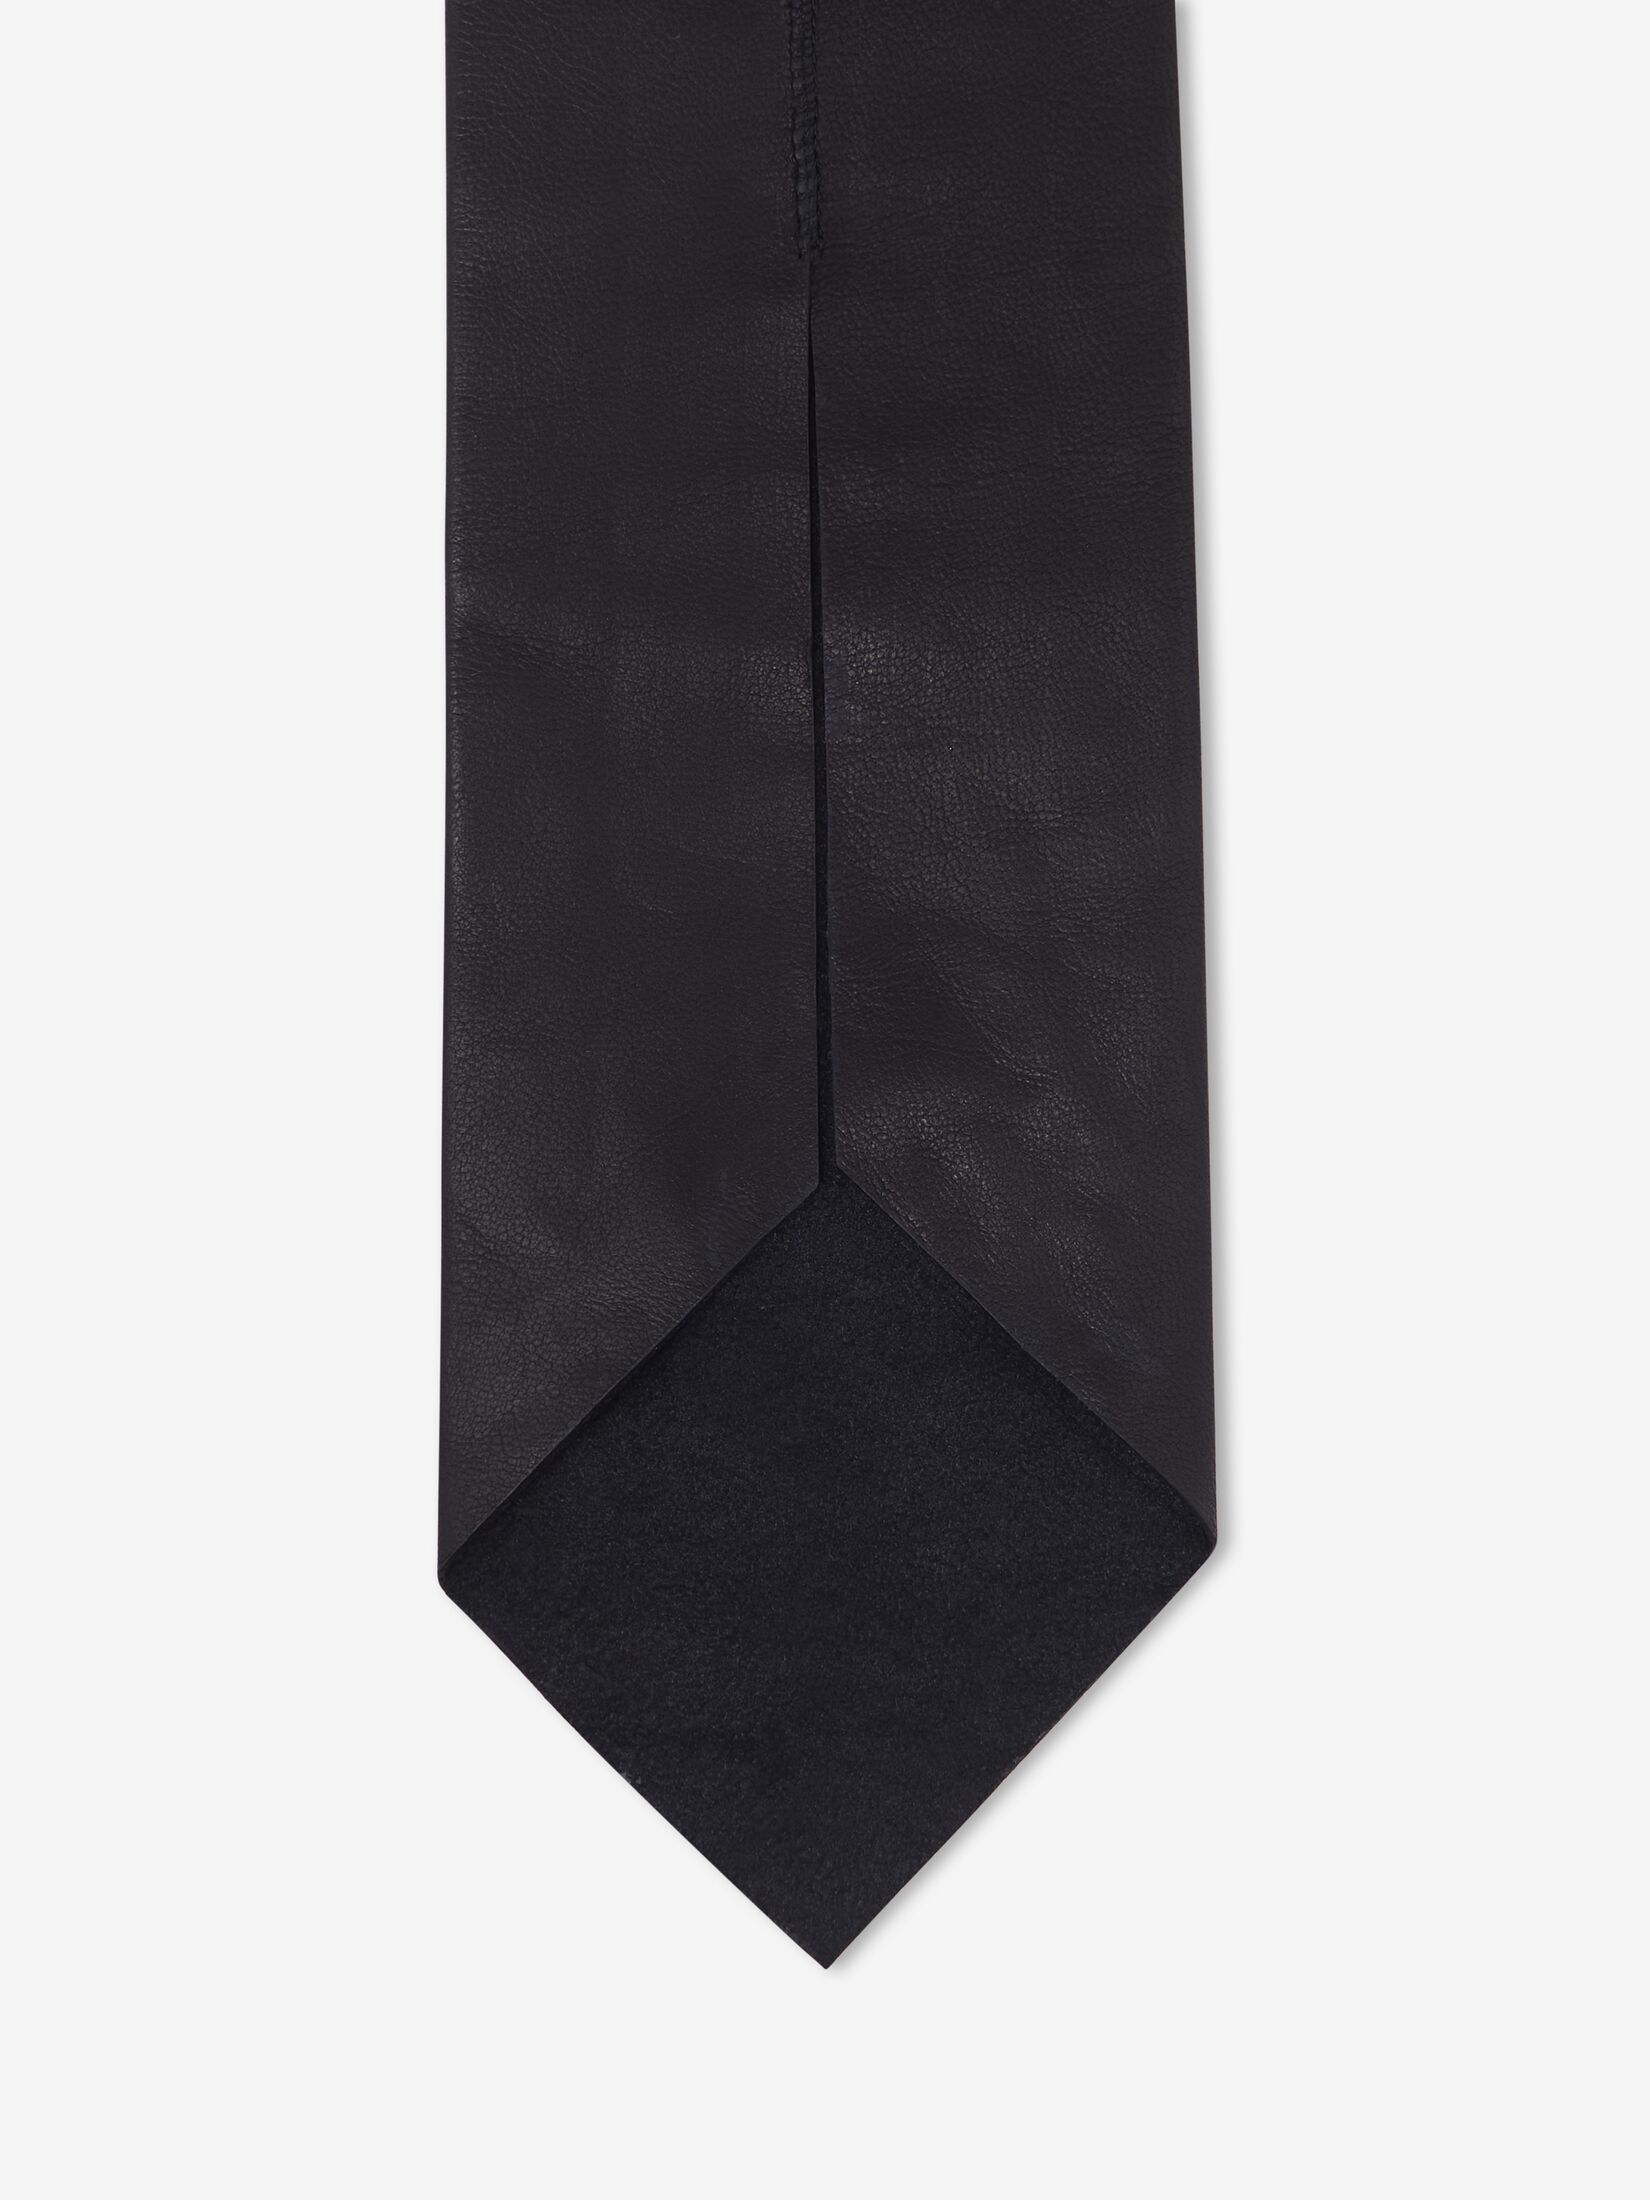 皮革領帶